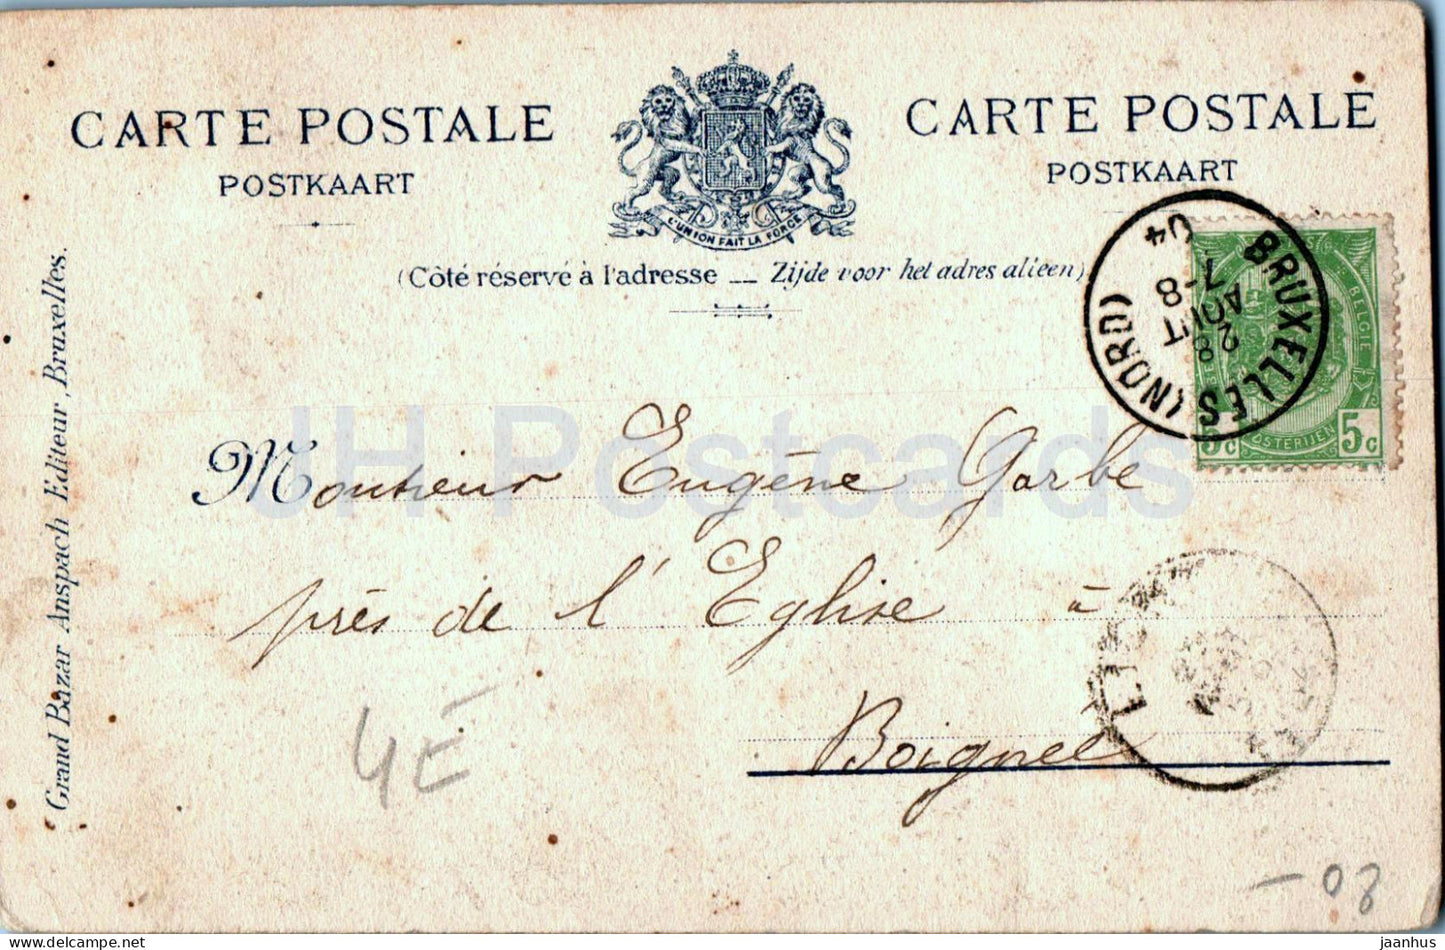 Bruxelles - Bruxelles - Manneken Pis - Garçon - 18 ans - carte postale ancienne - 1904 - Belgique - utilisé 